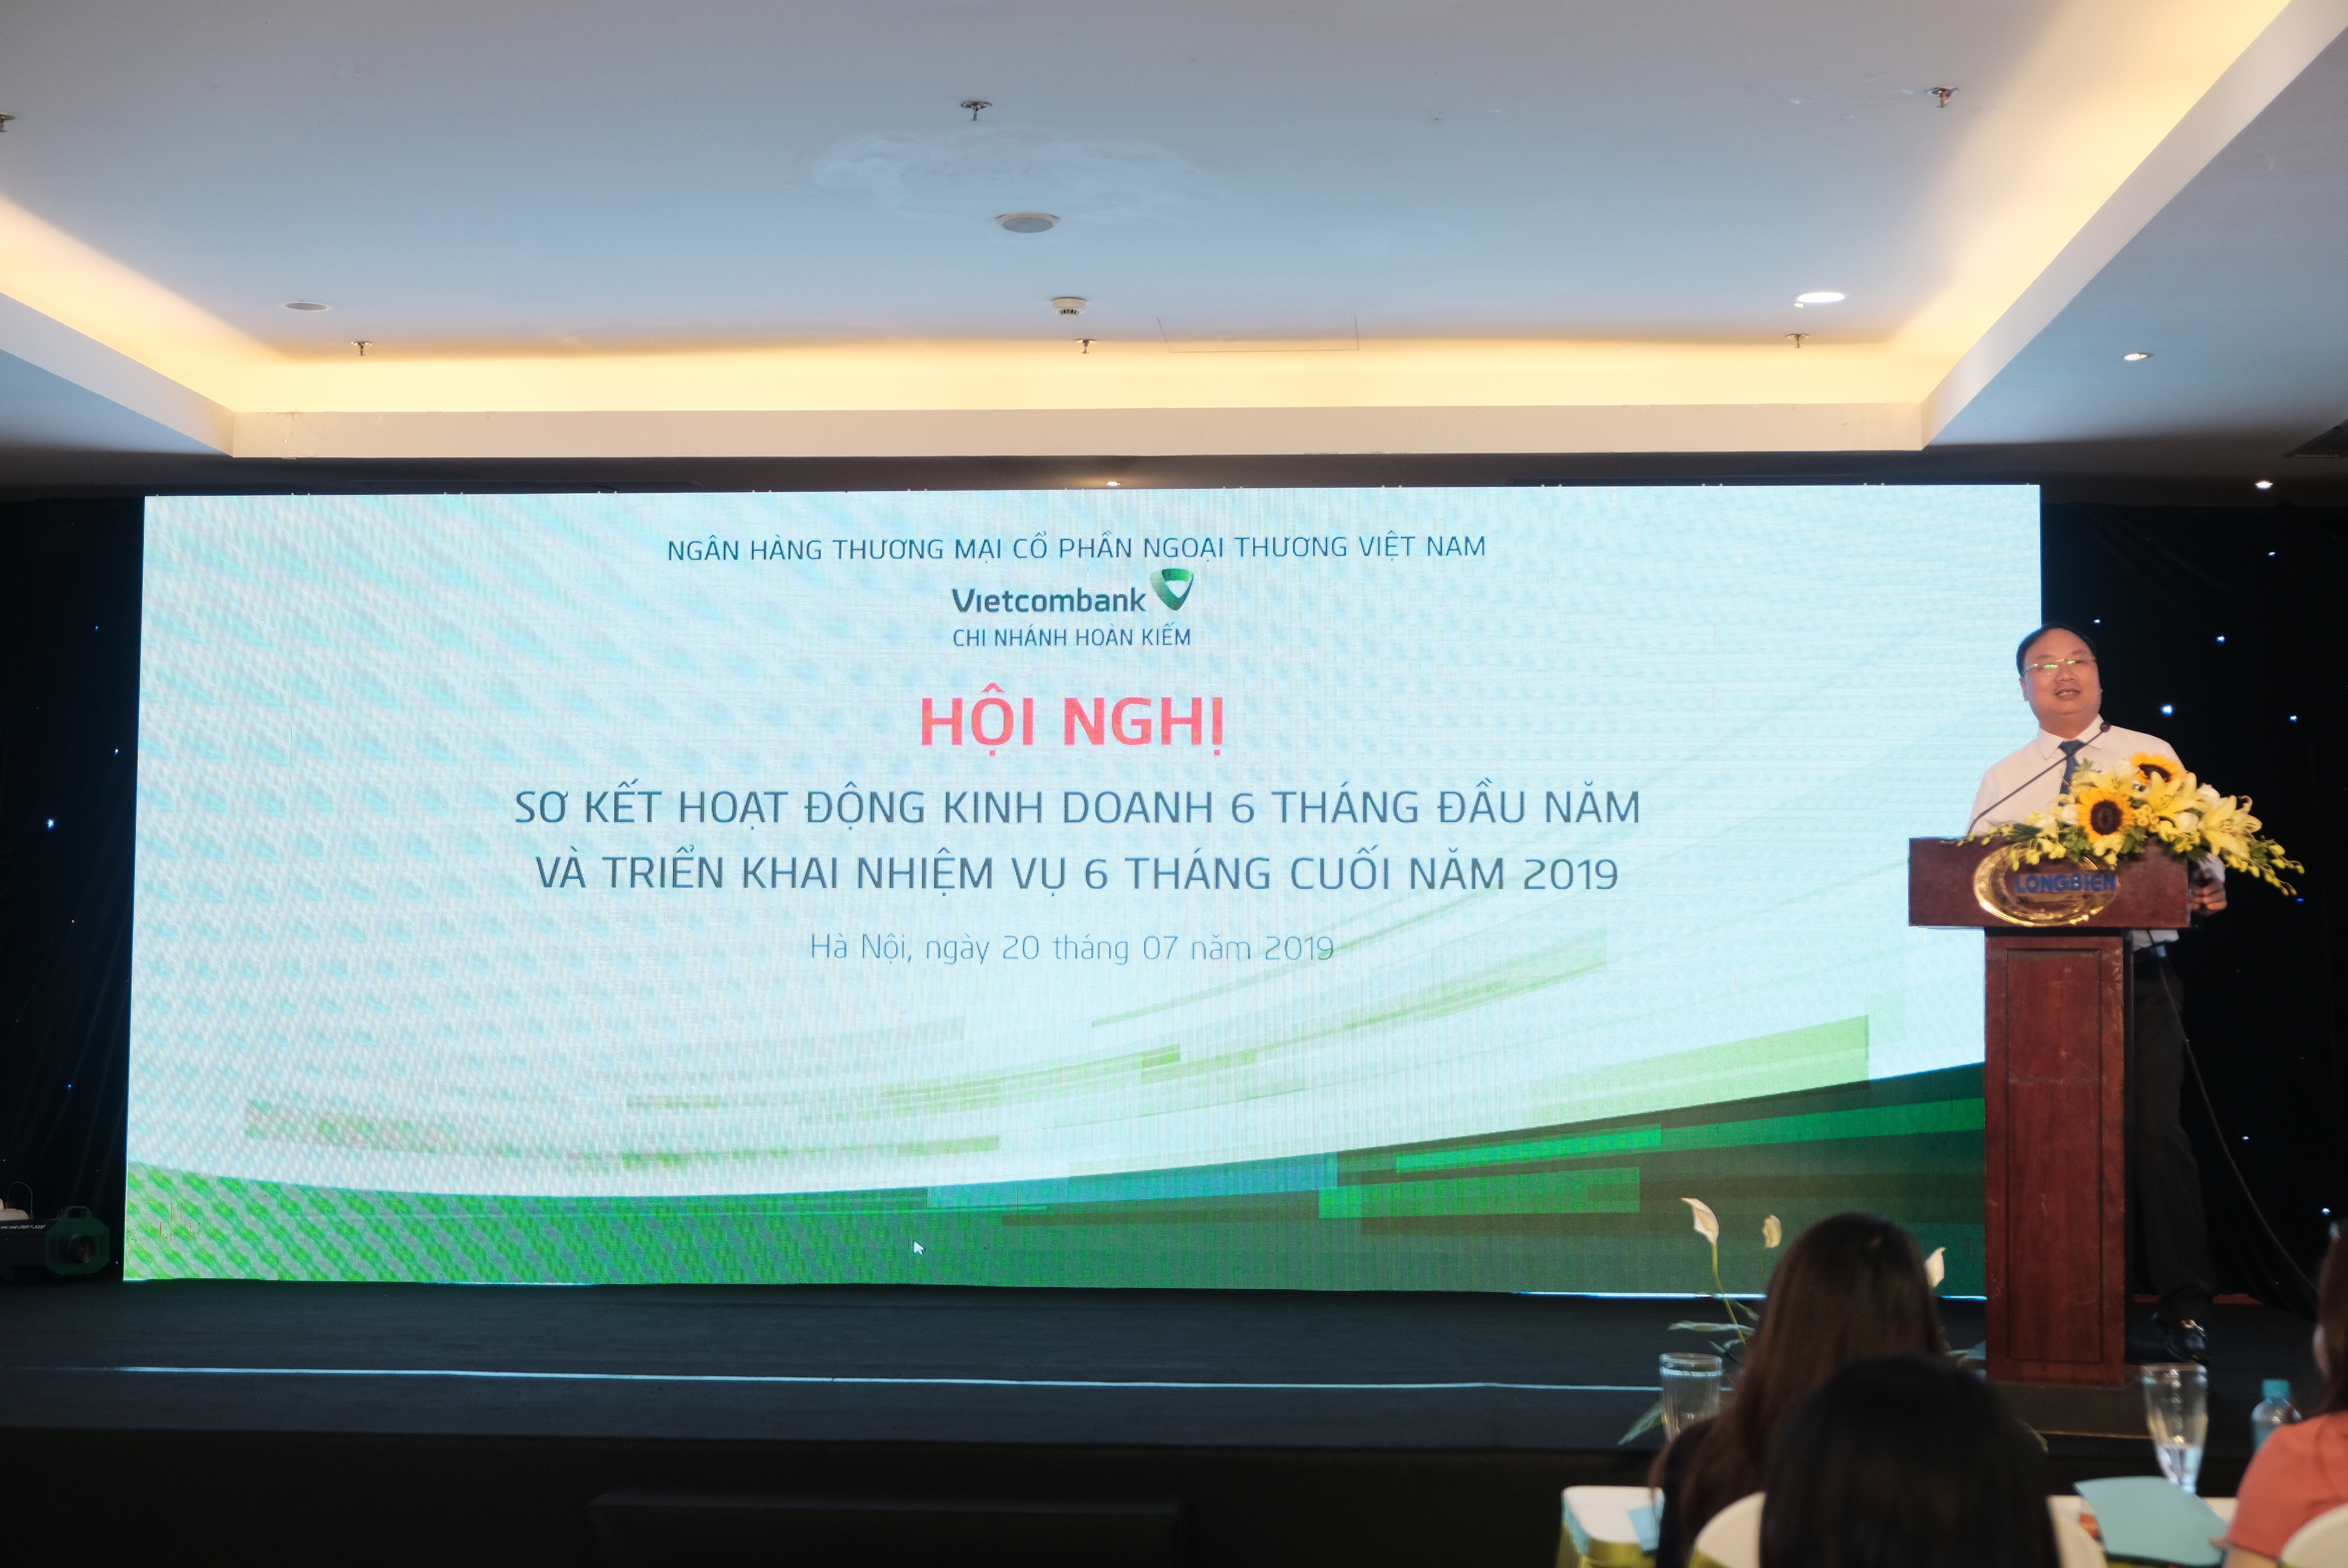 Vietcombank Hoàn Kiếm tổ chức Hội nghị triển khai nhiệm vụ kinh doanh 06 tháng cuối năm 2019